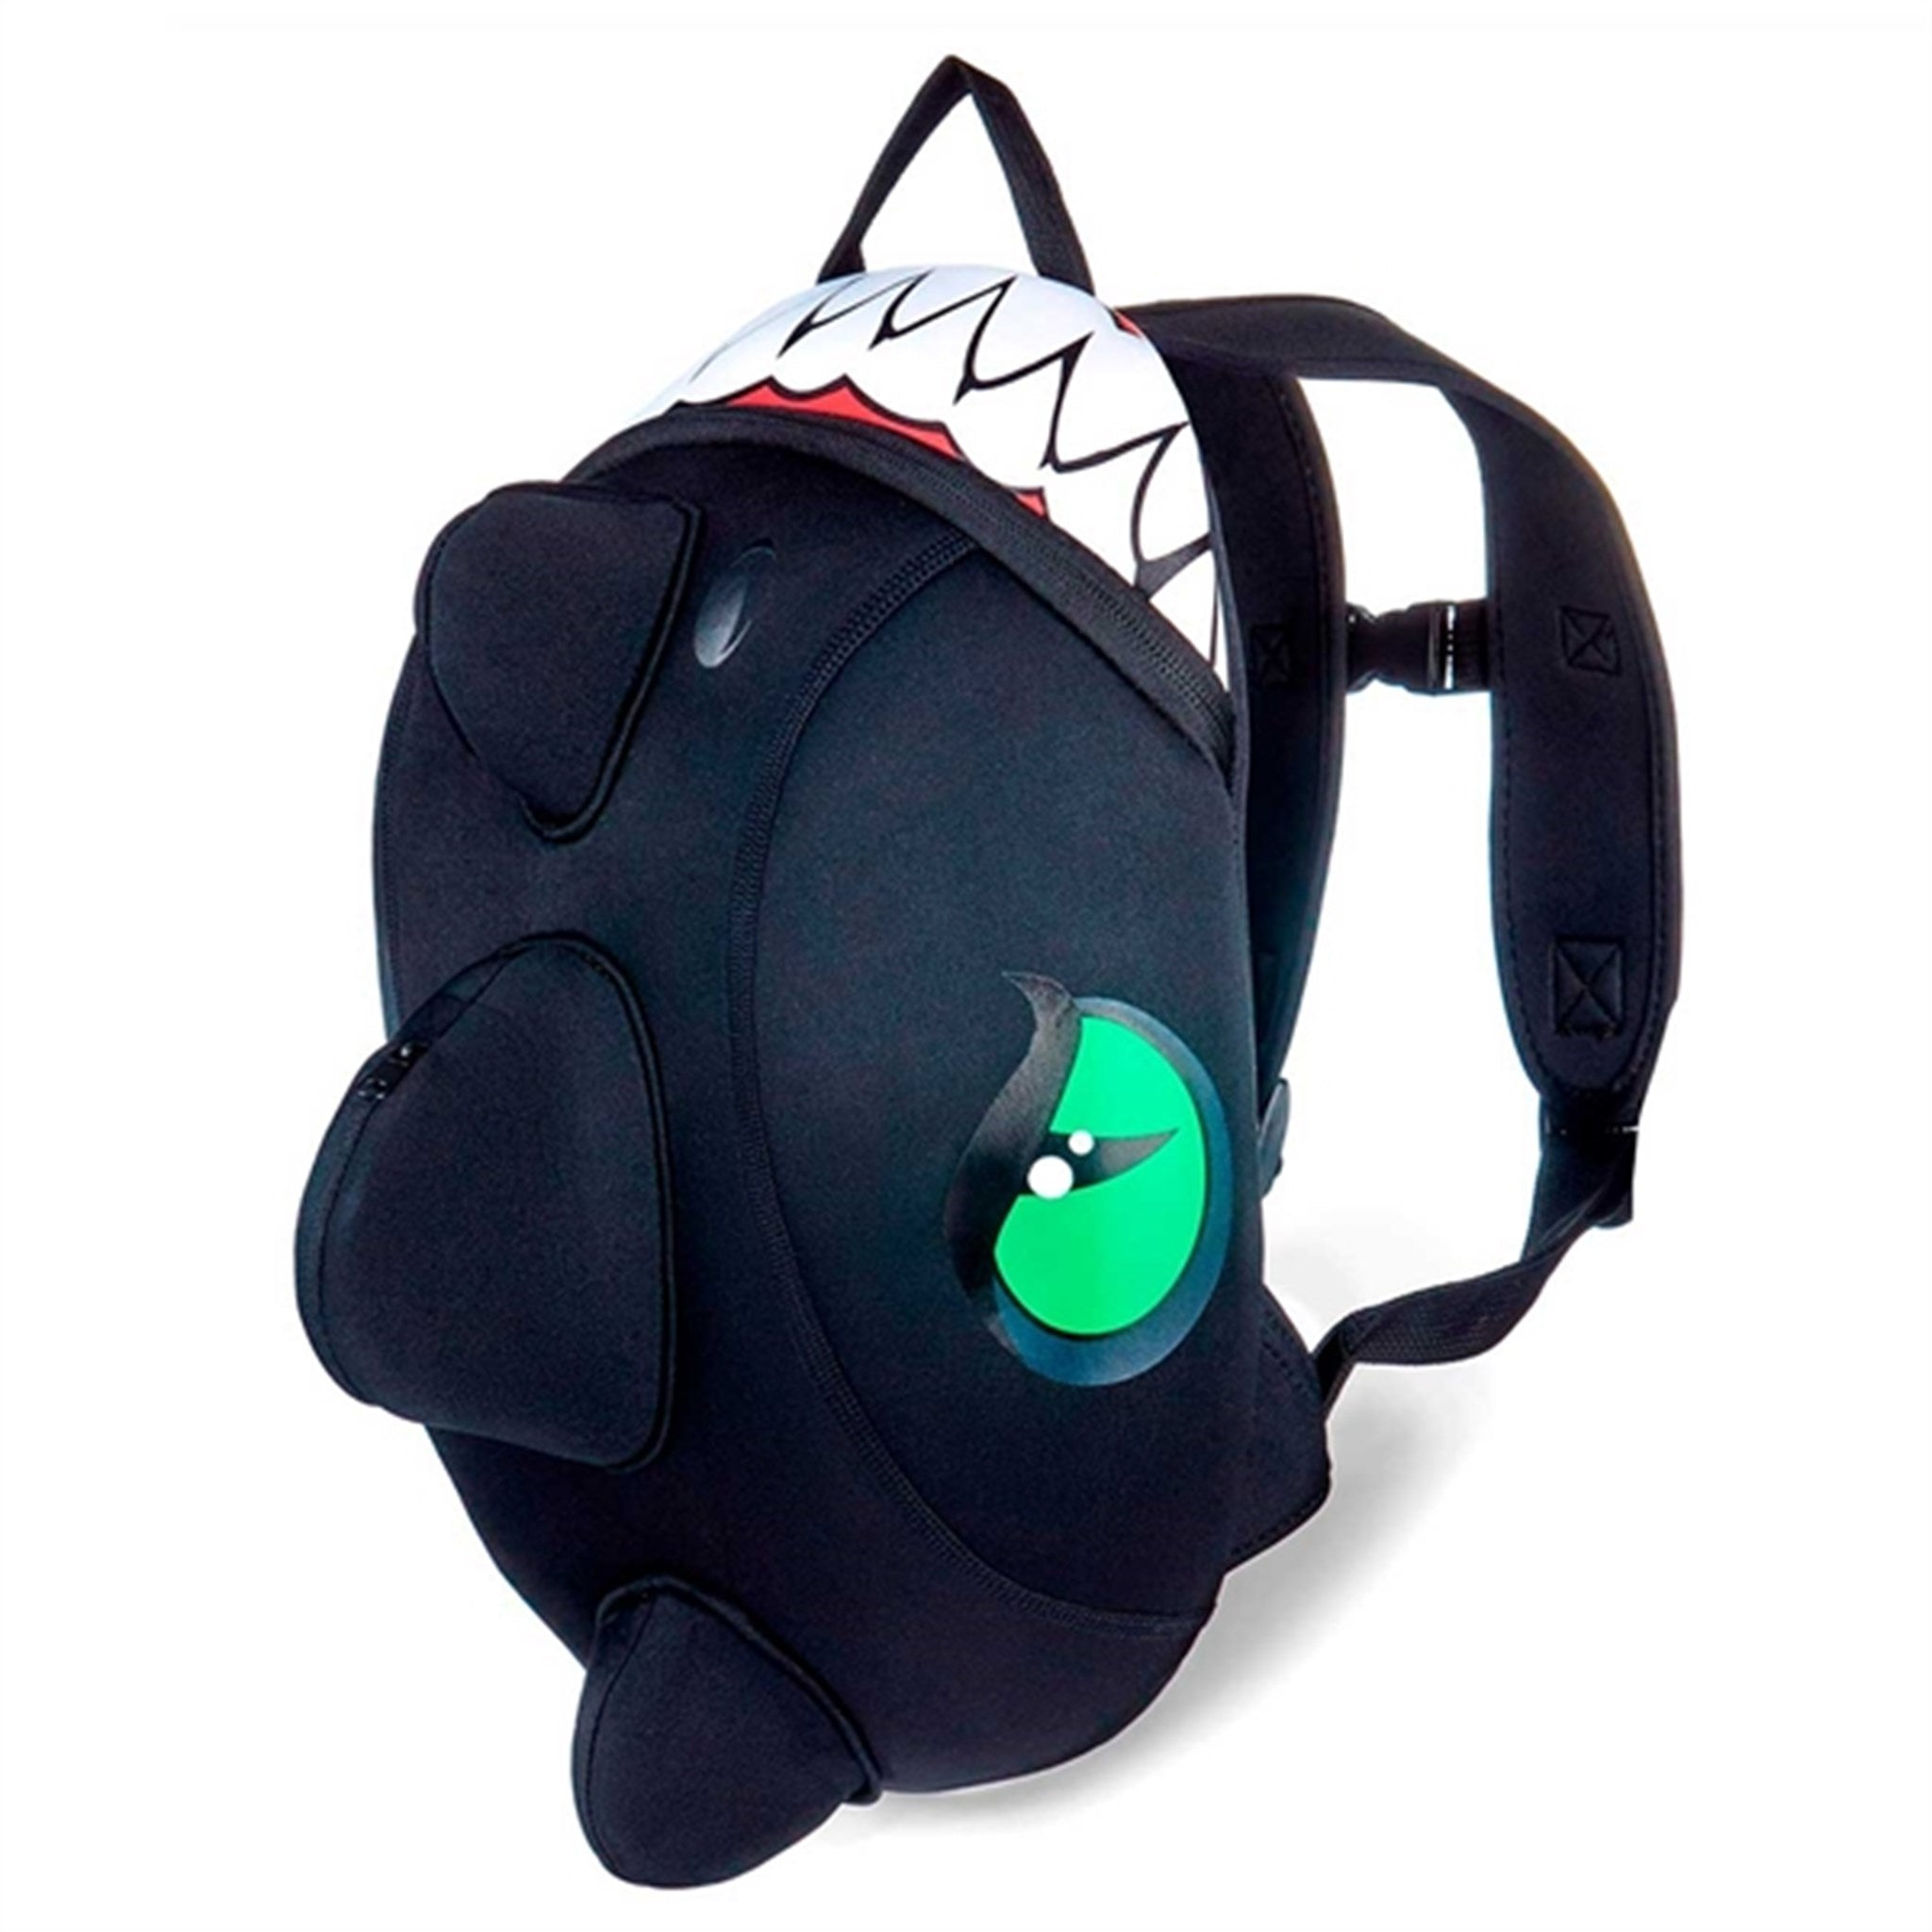 Crazy Safety Dragon Backpack Black